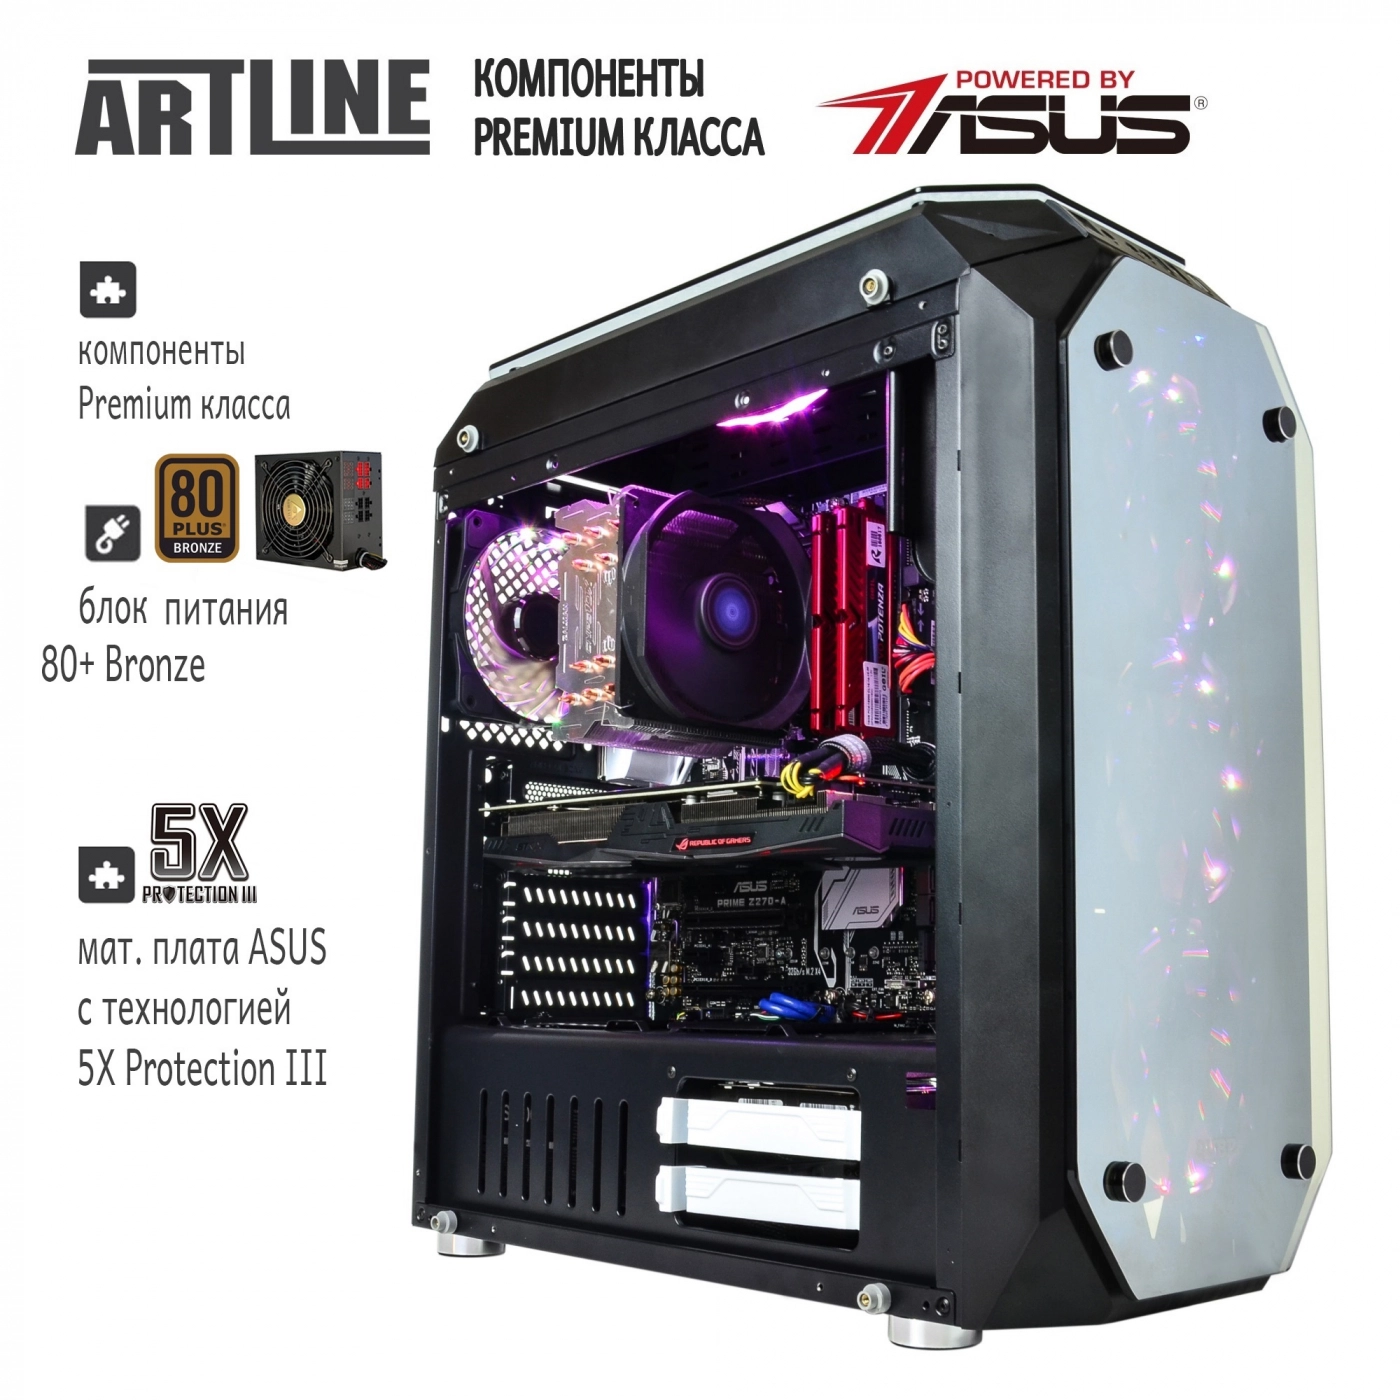 Купить Компьютер ARTLINE Gaming X95v25 - фото 3